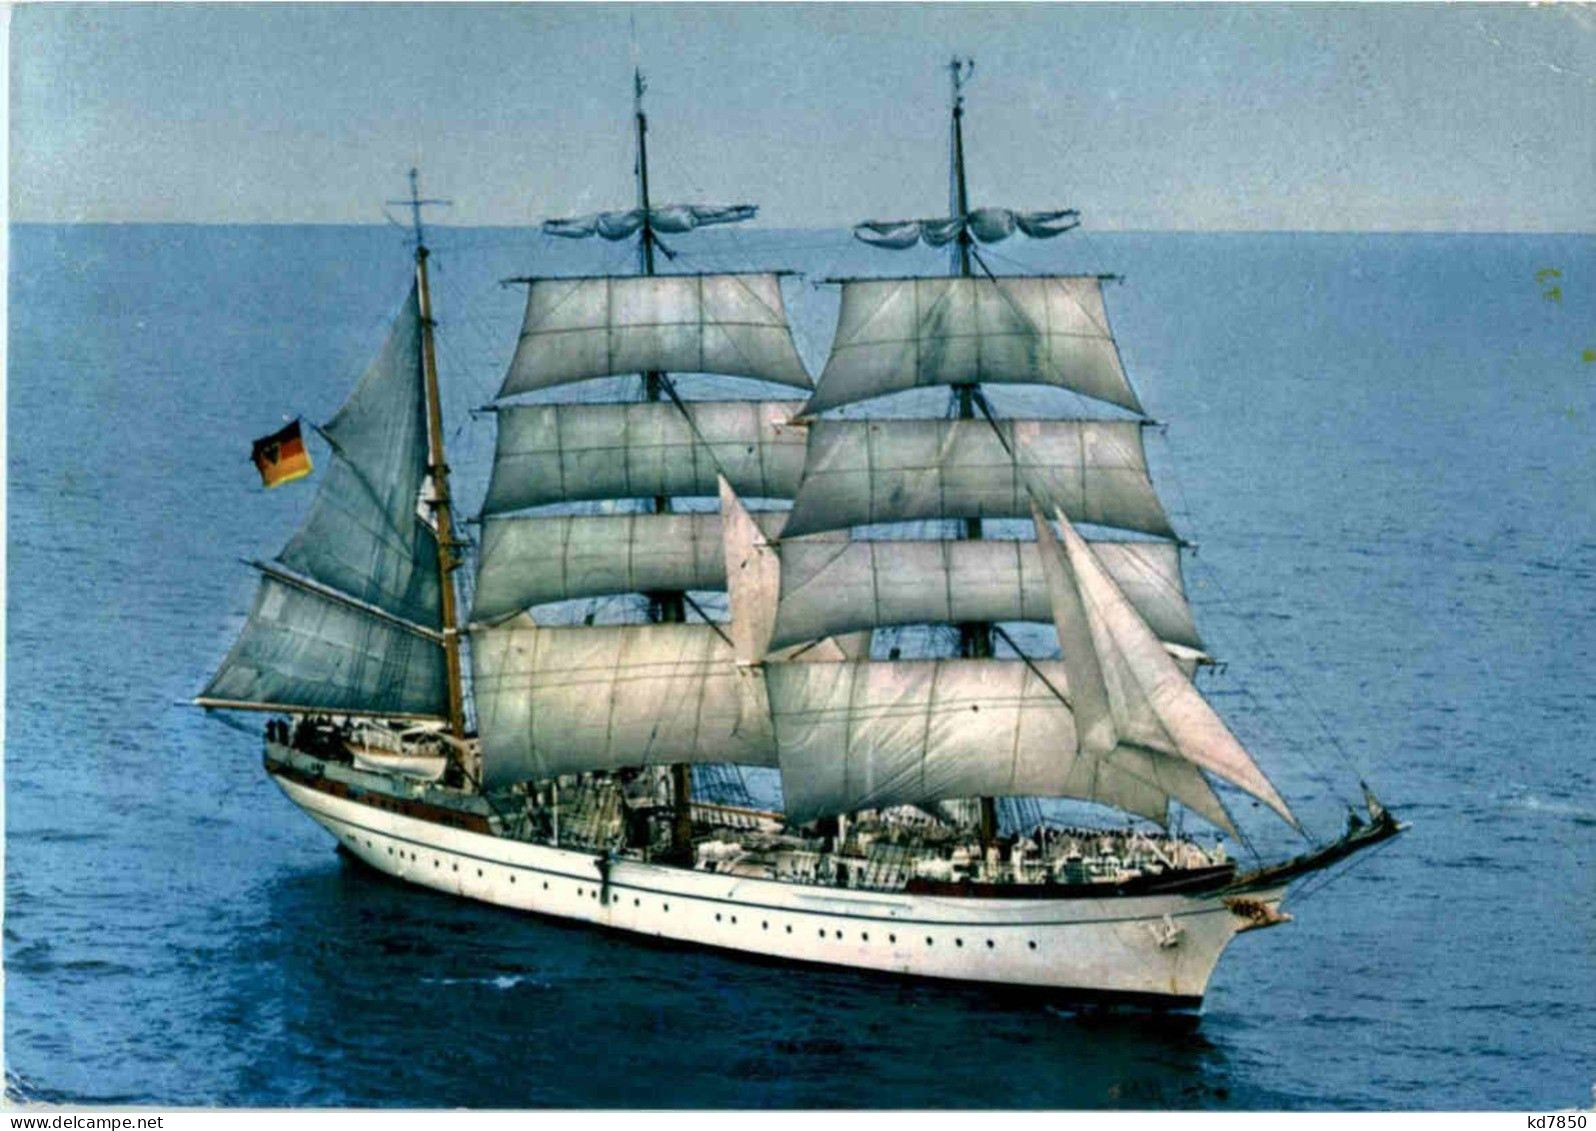 Segelschulschiff Gorch Fock - Segelboote